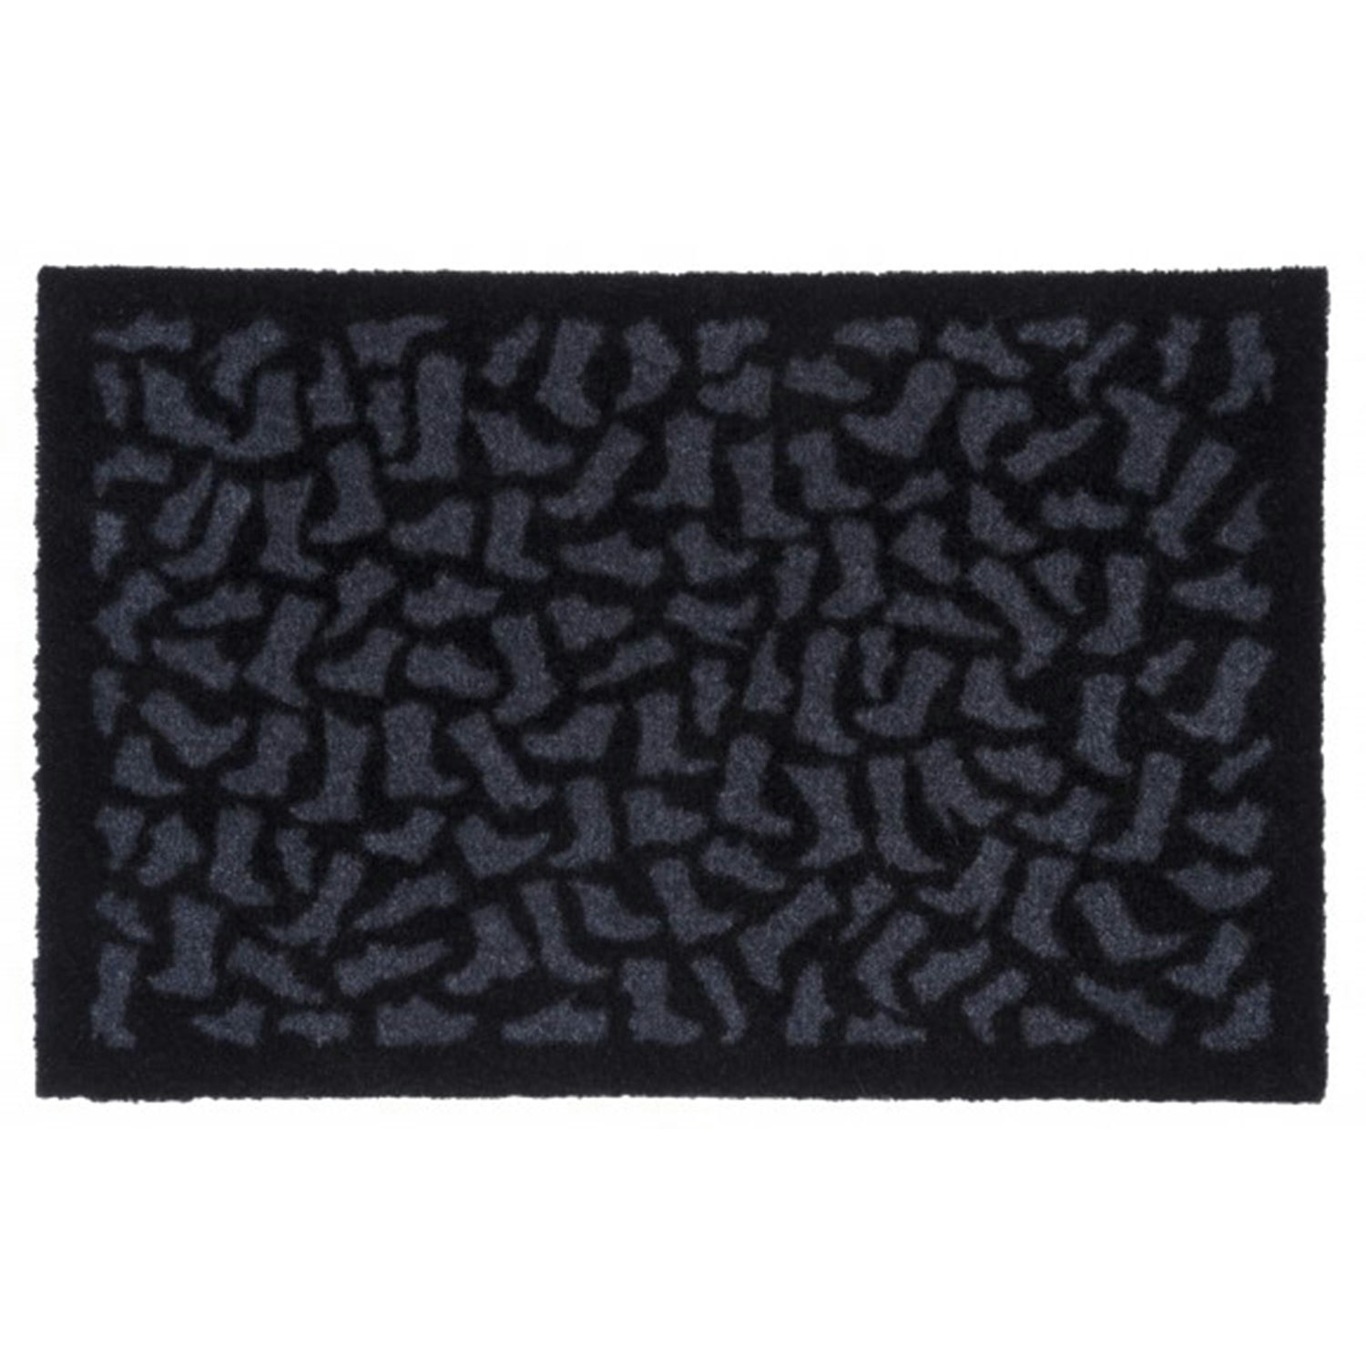 Footwear Doormat 40x60cm, Black/Grey